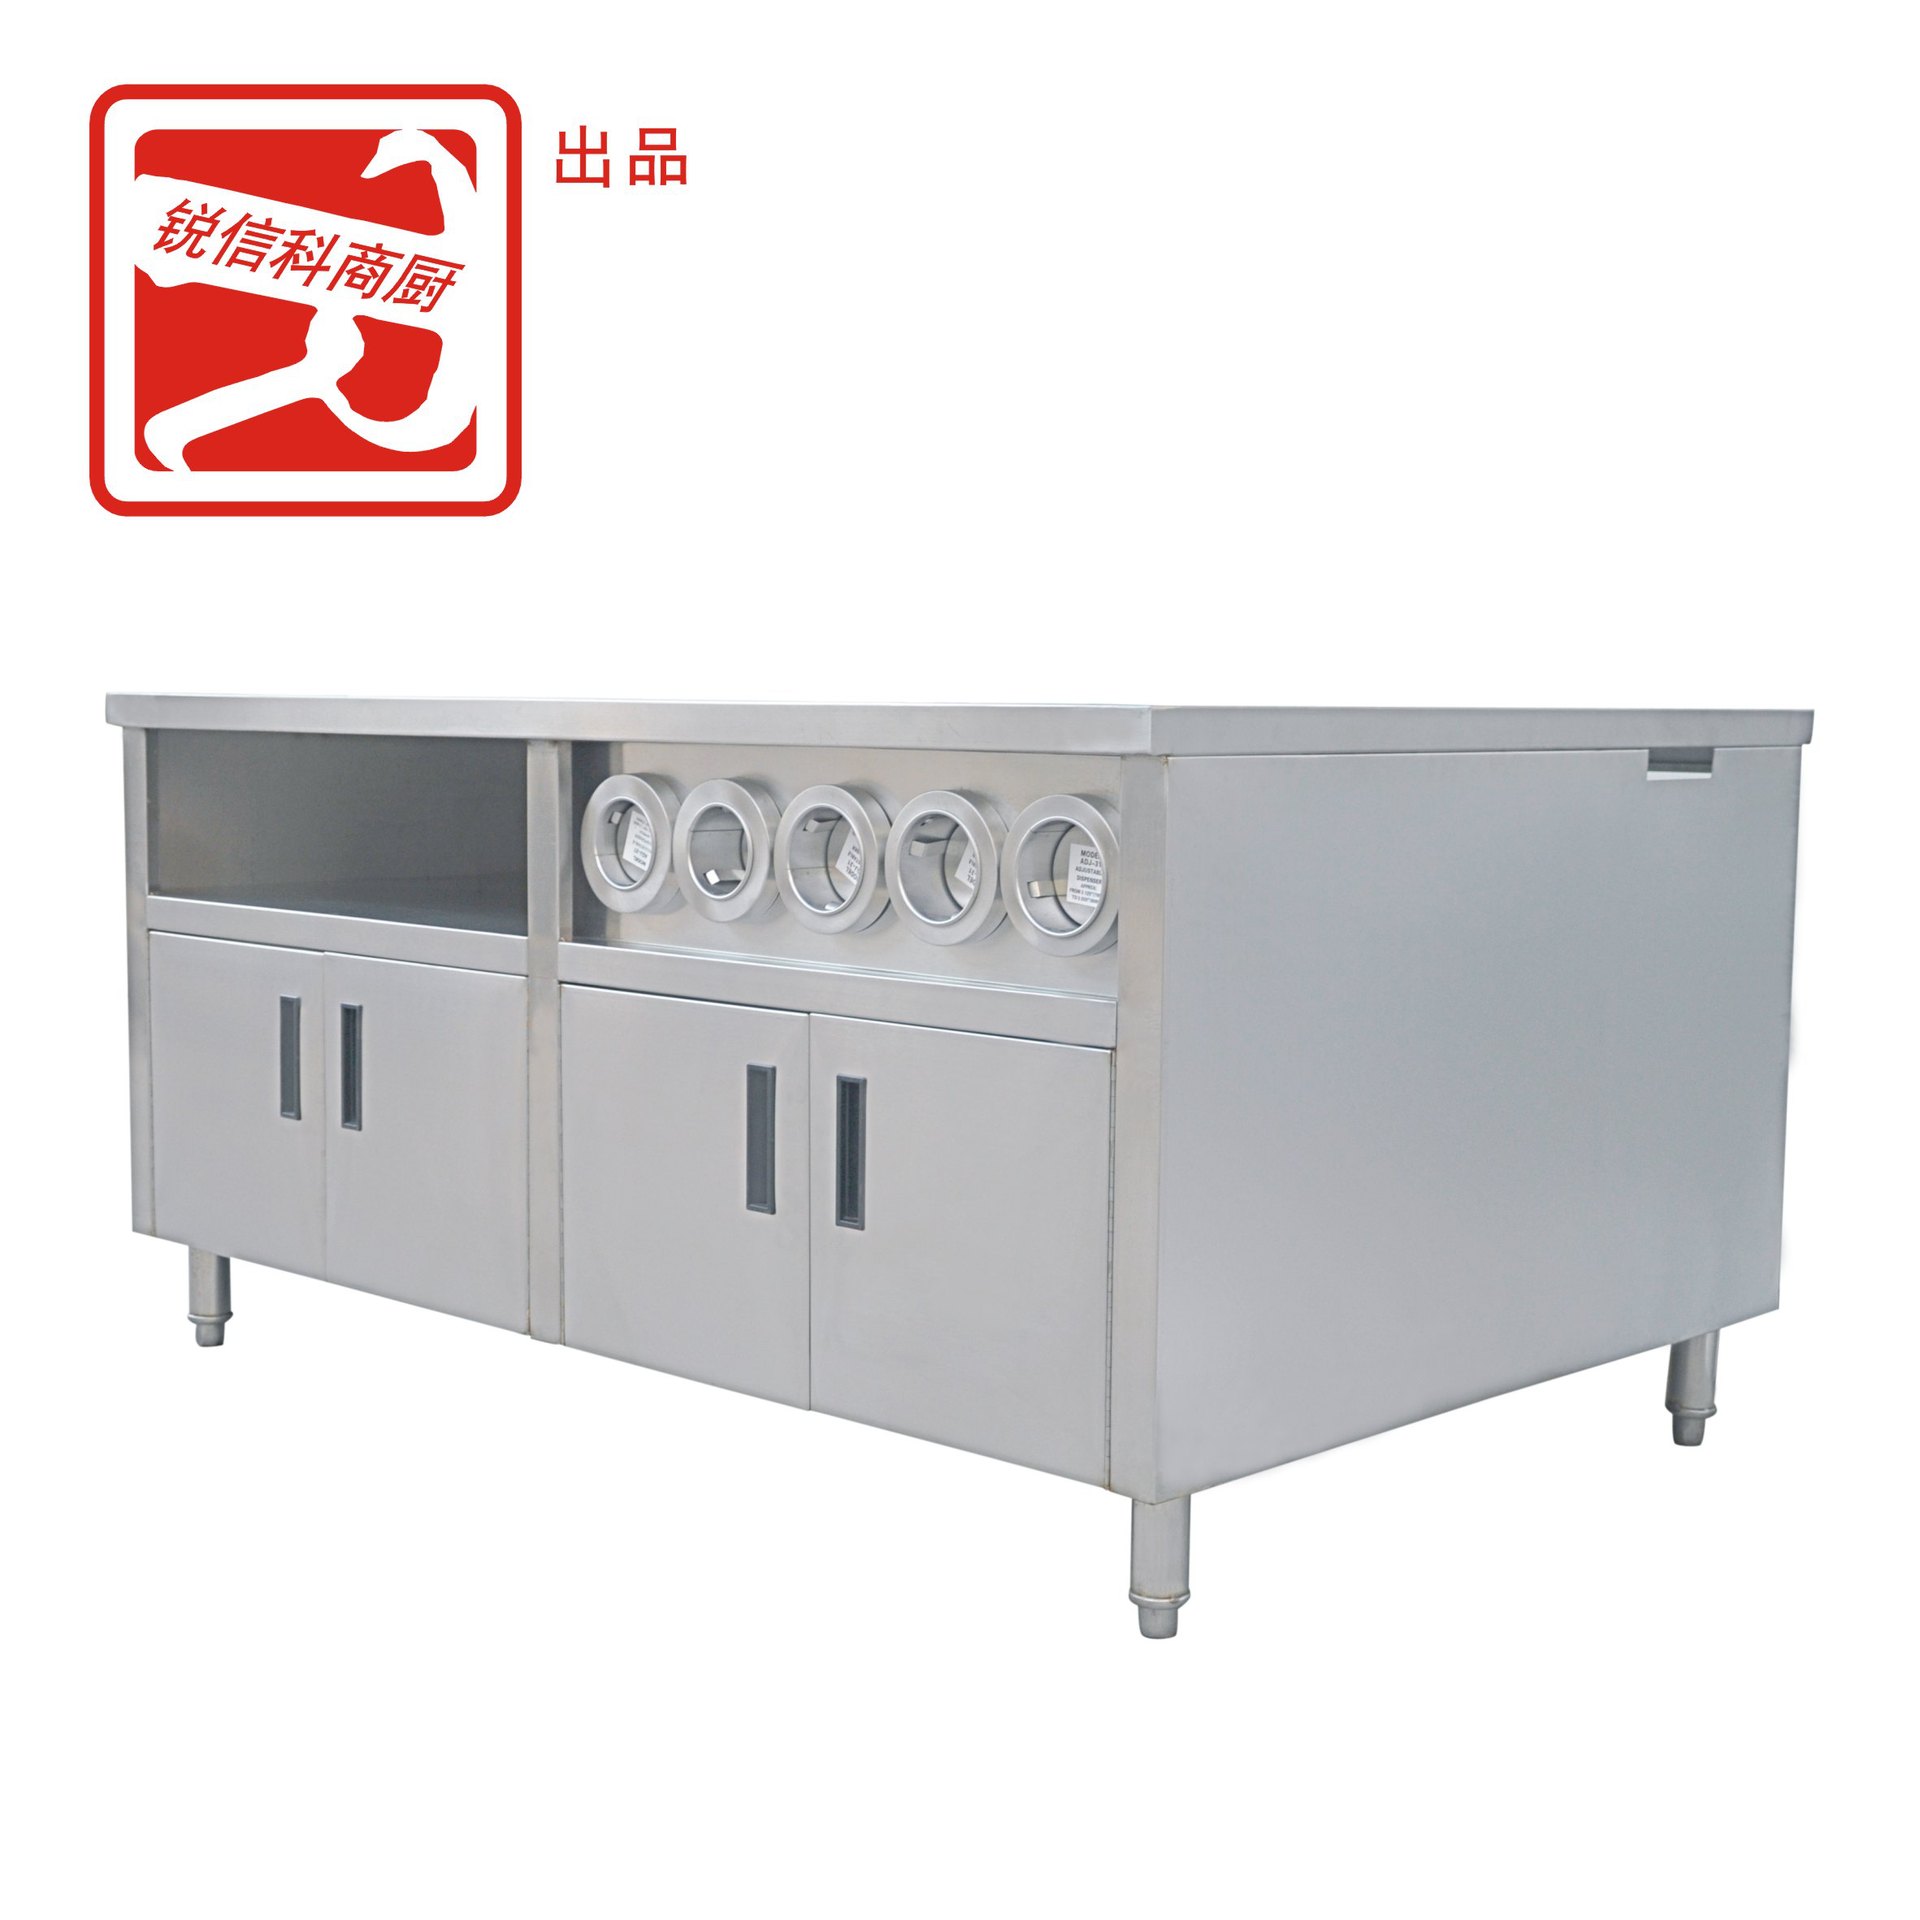 广州瑞信厨房设备有限公司